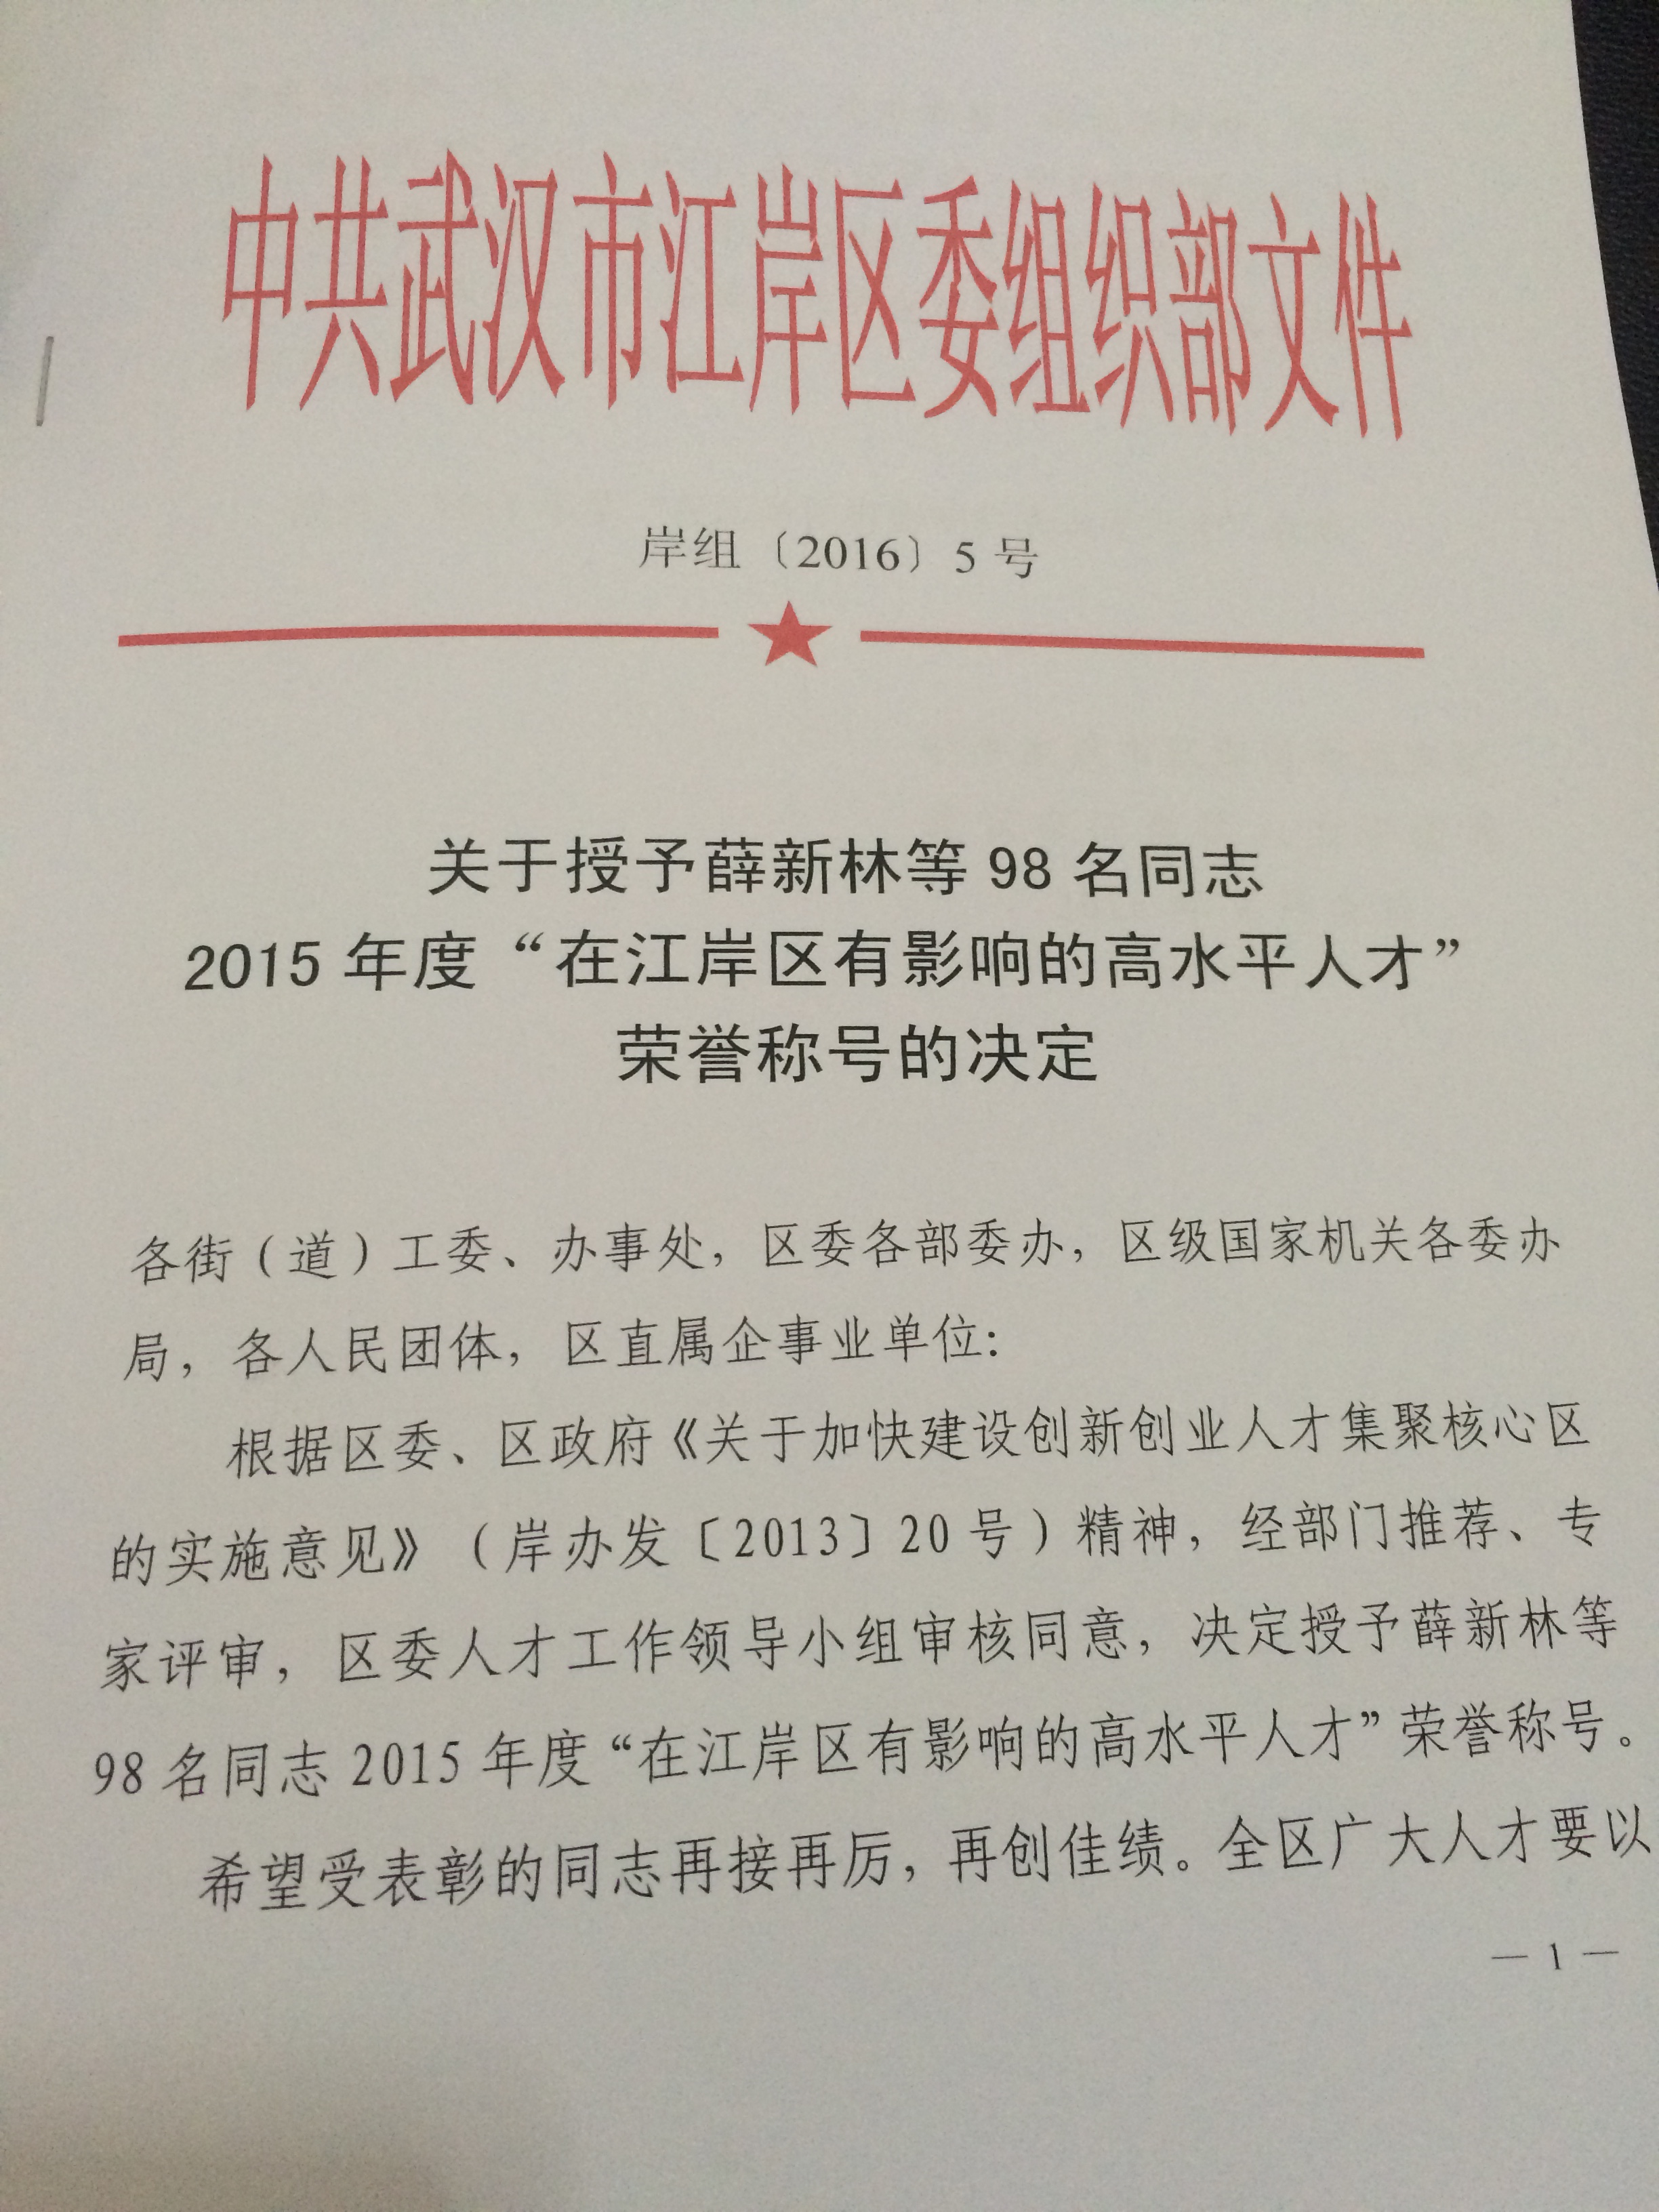 总经理王昉被授予2015年度“在江岸区有影响的高水平人才”荣誉称号